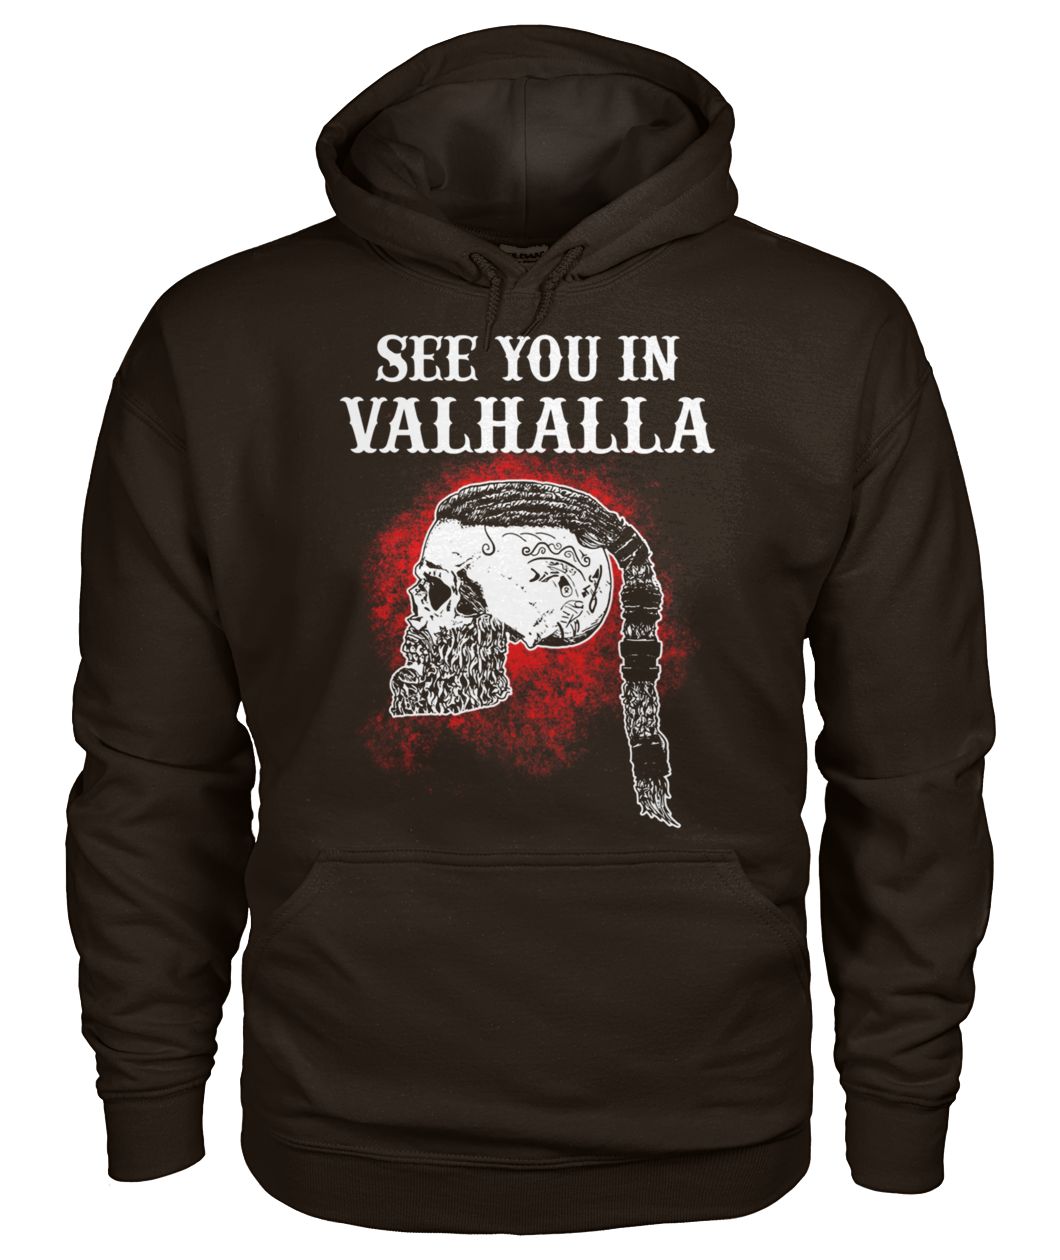 Viking see you in valhalla gildan hoodie